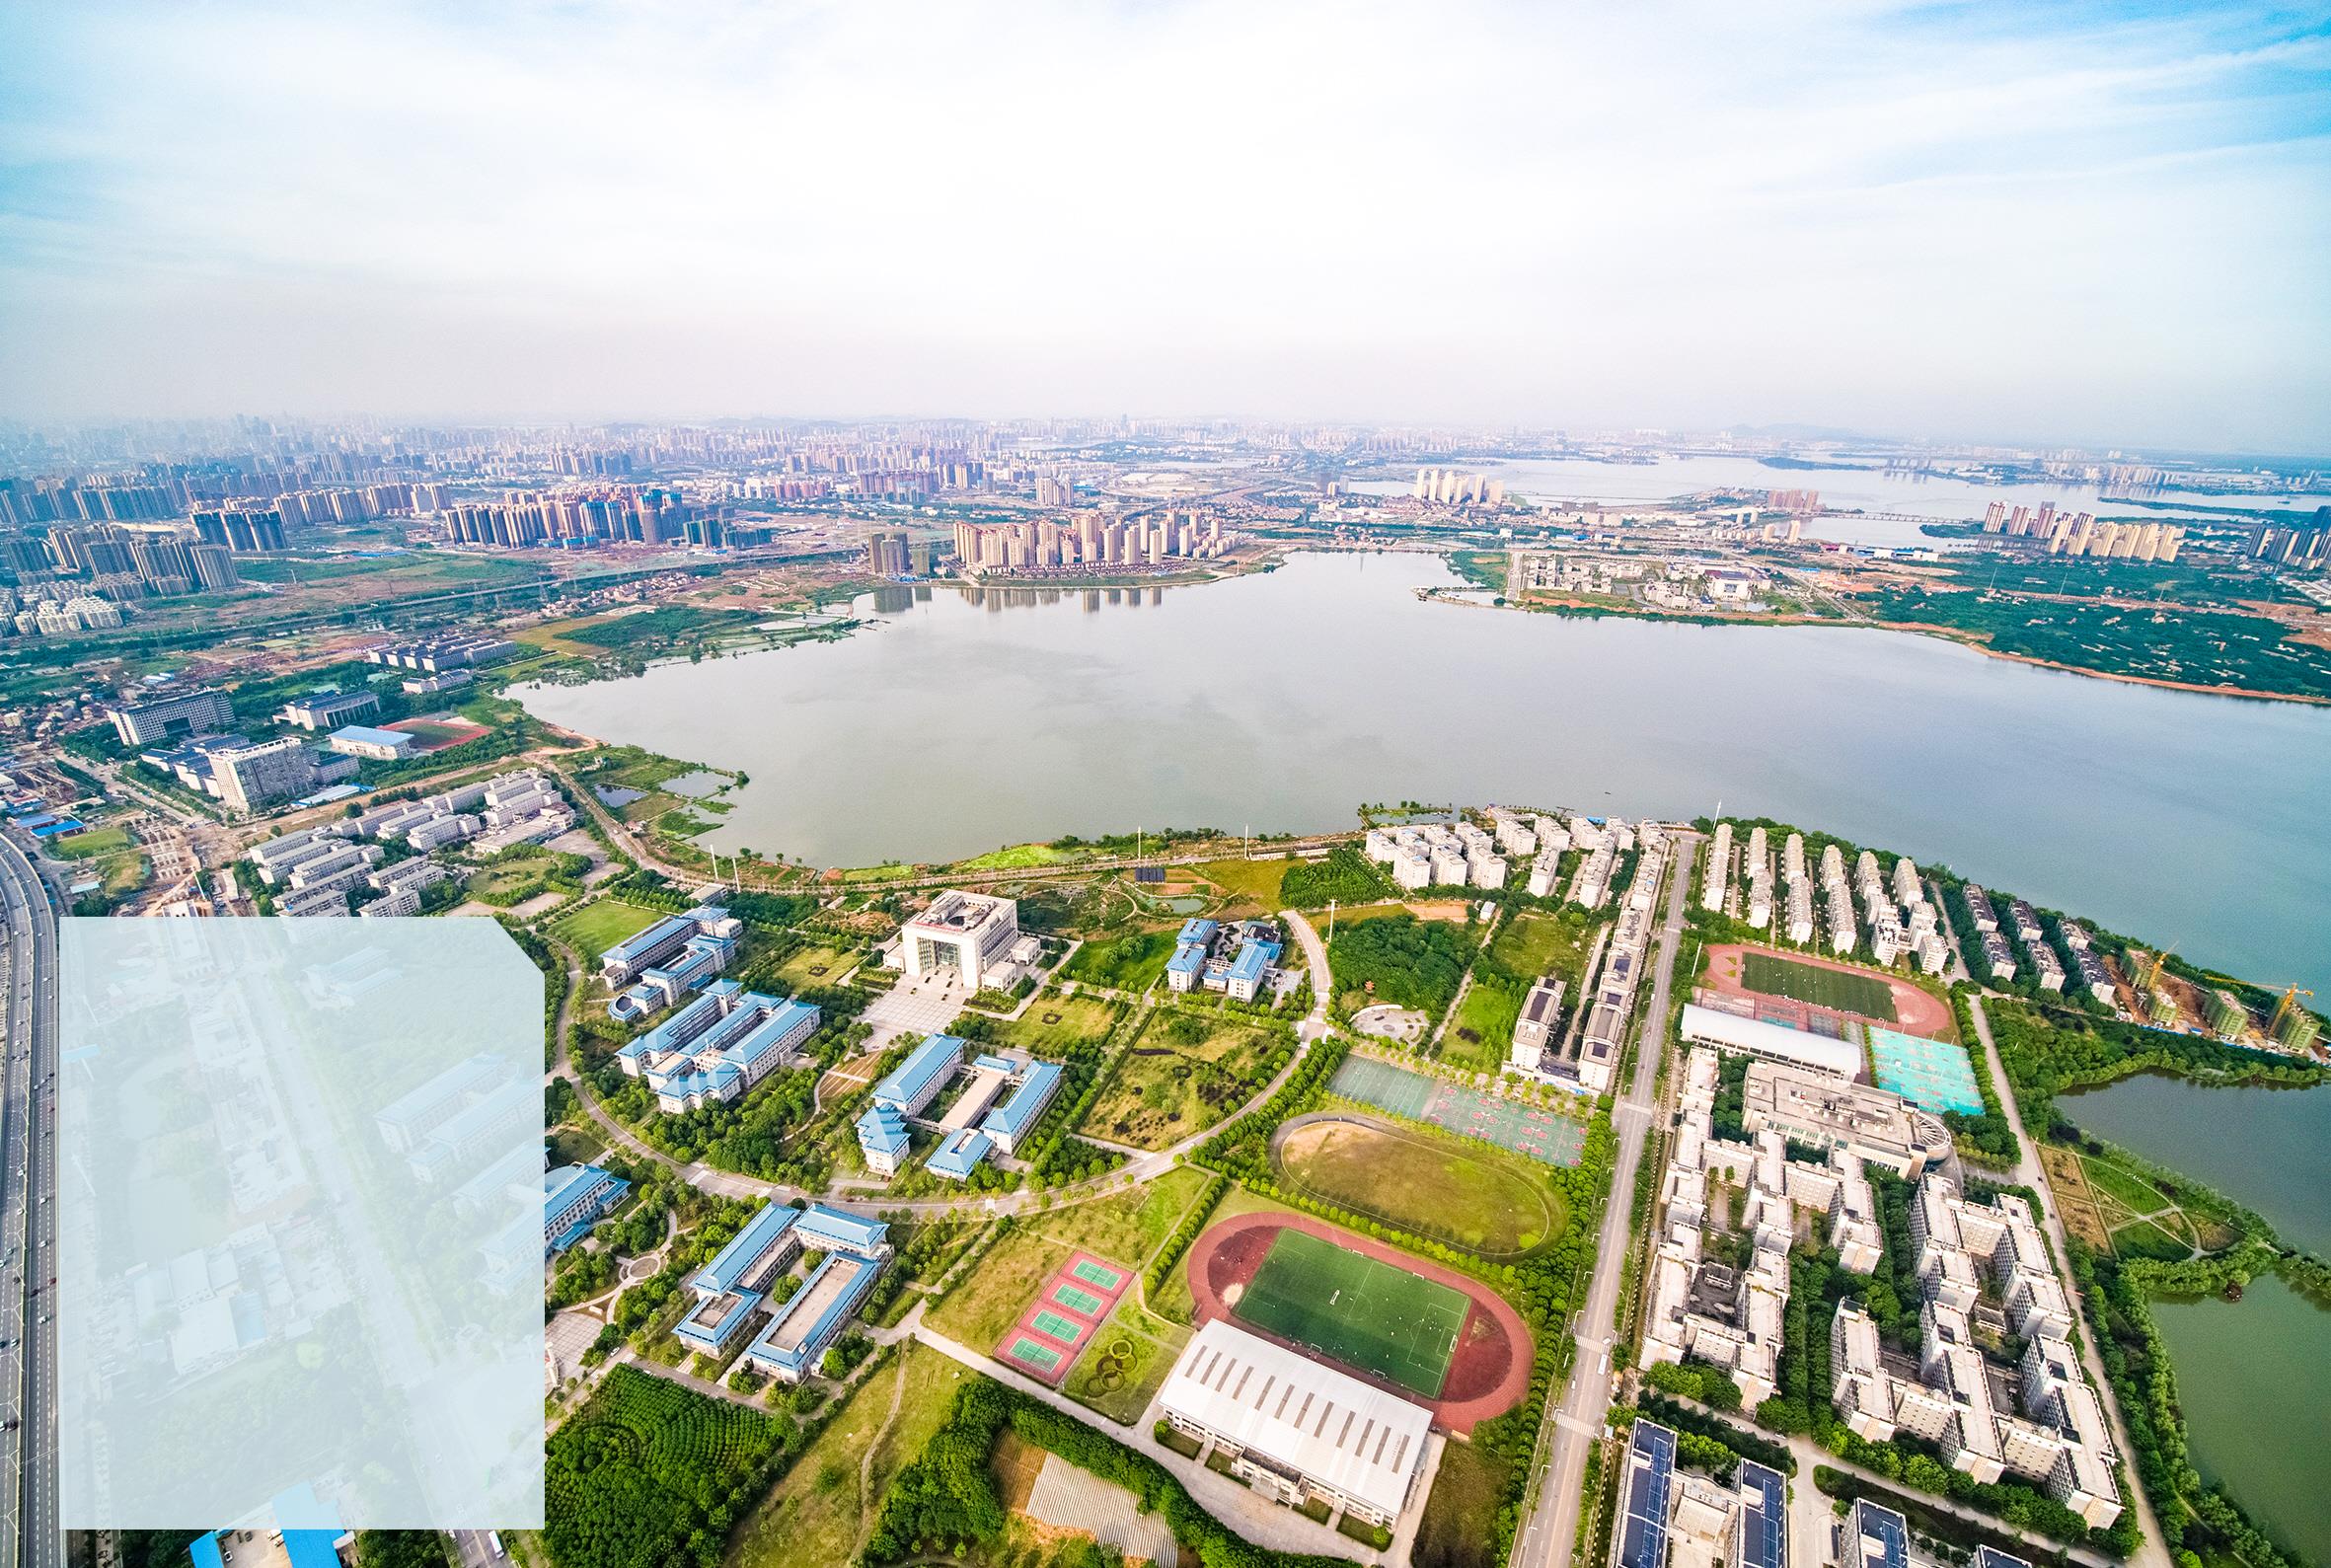 充分发挥高校集群优势 引领武汉南部新城建设 代表委员热议：让黄家湖更闪亮